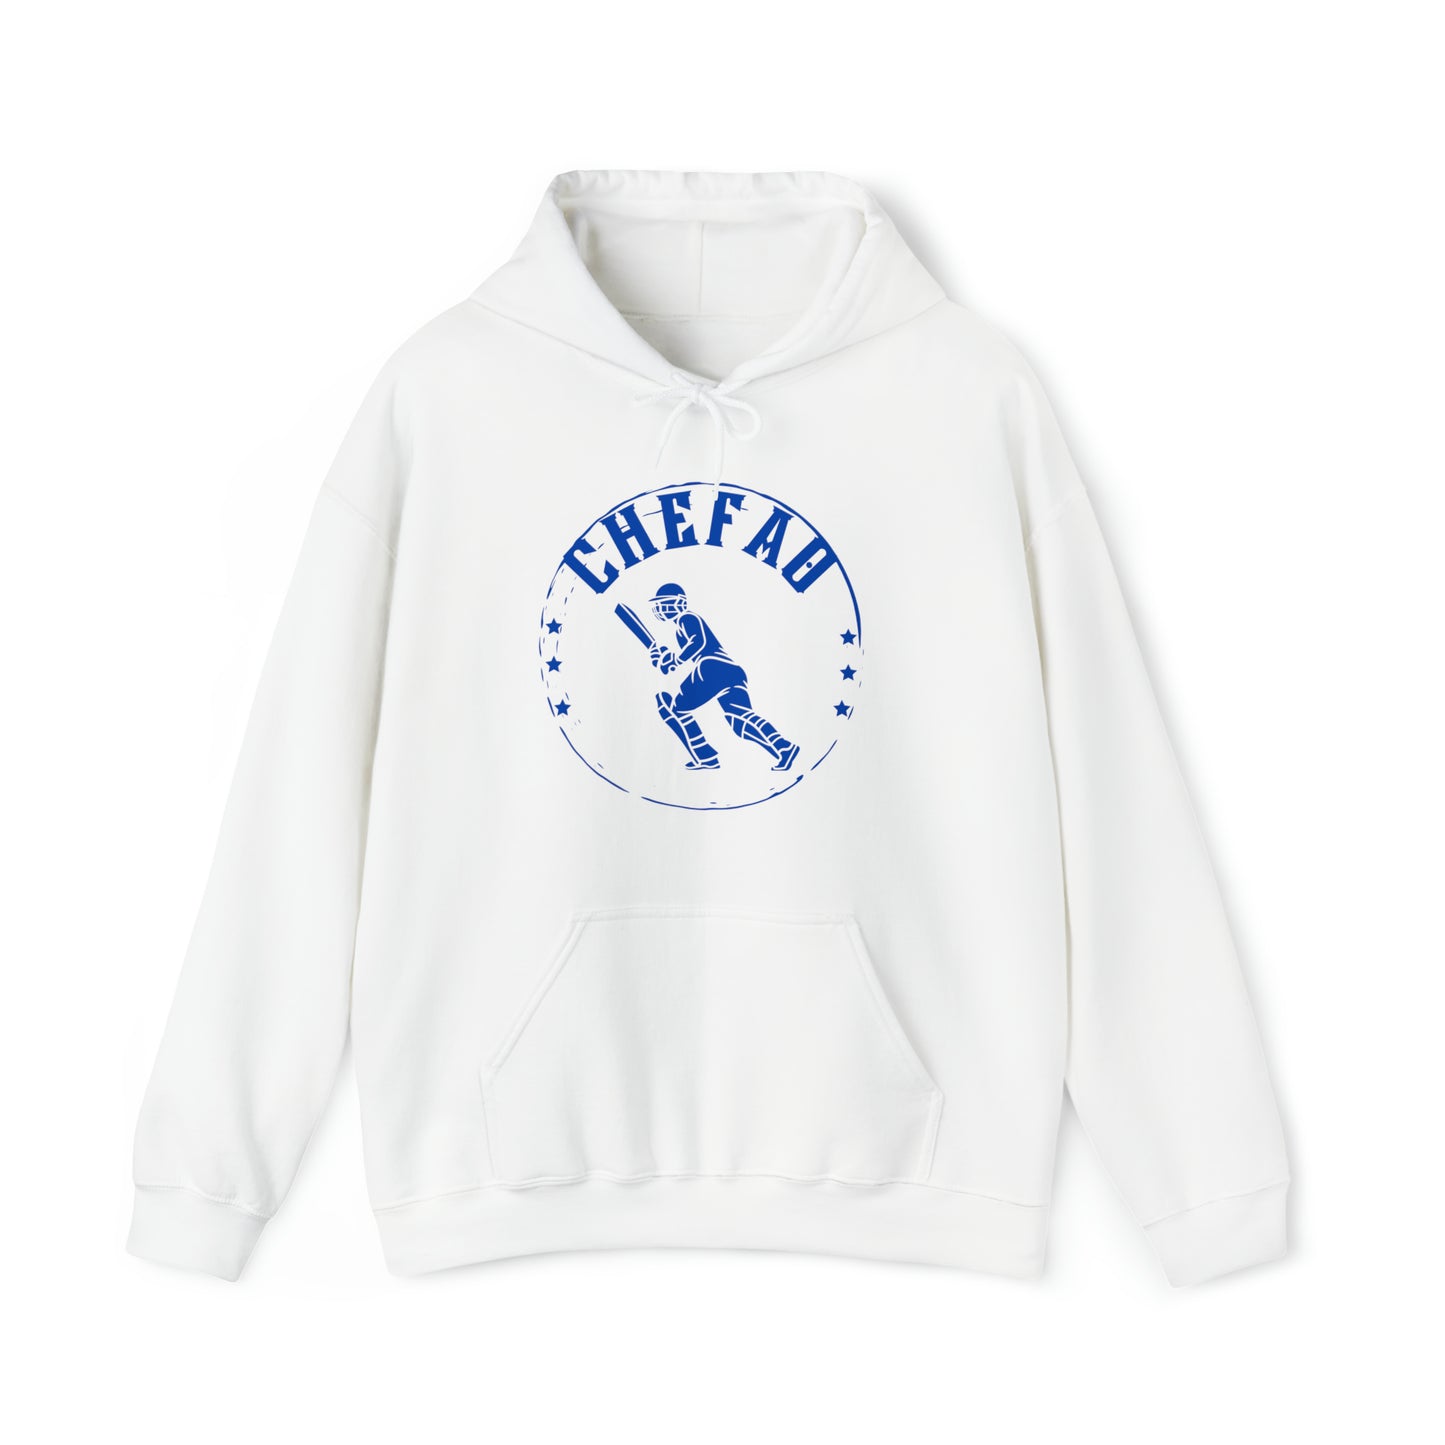 Chefao Cricket III, Unisex Heavy Blend Hooded Sweatshirt